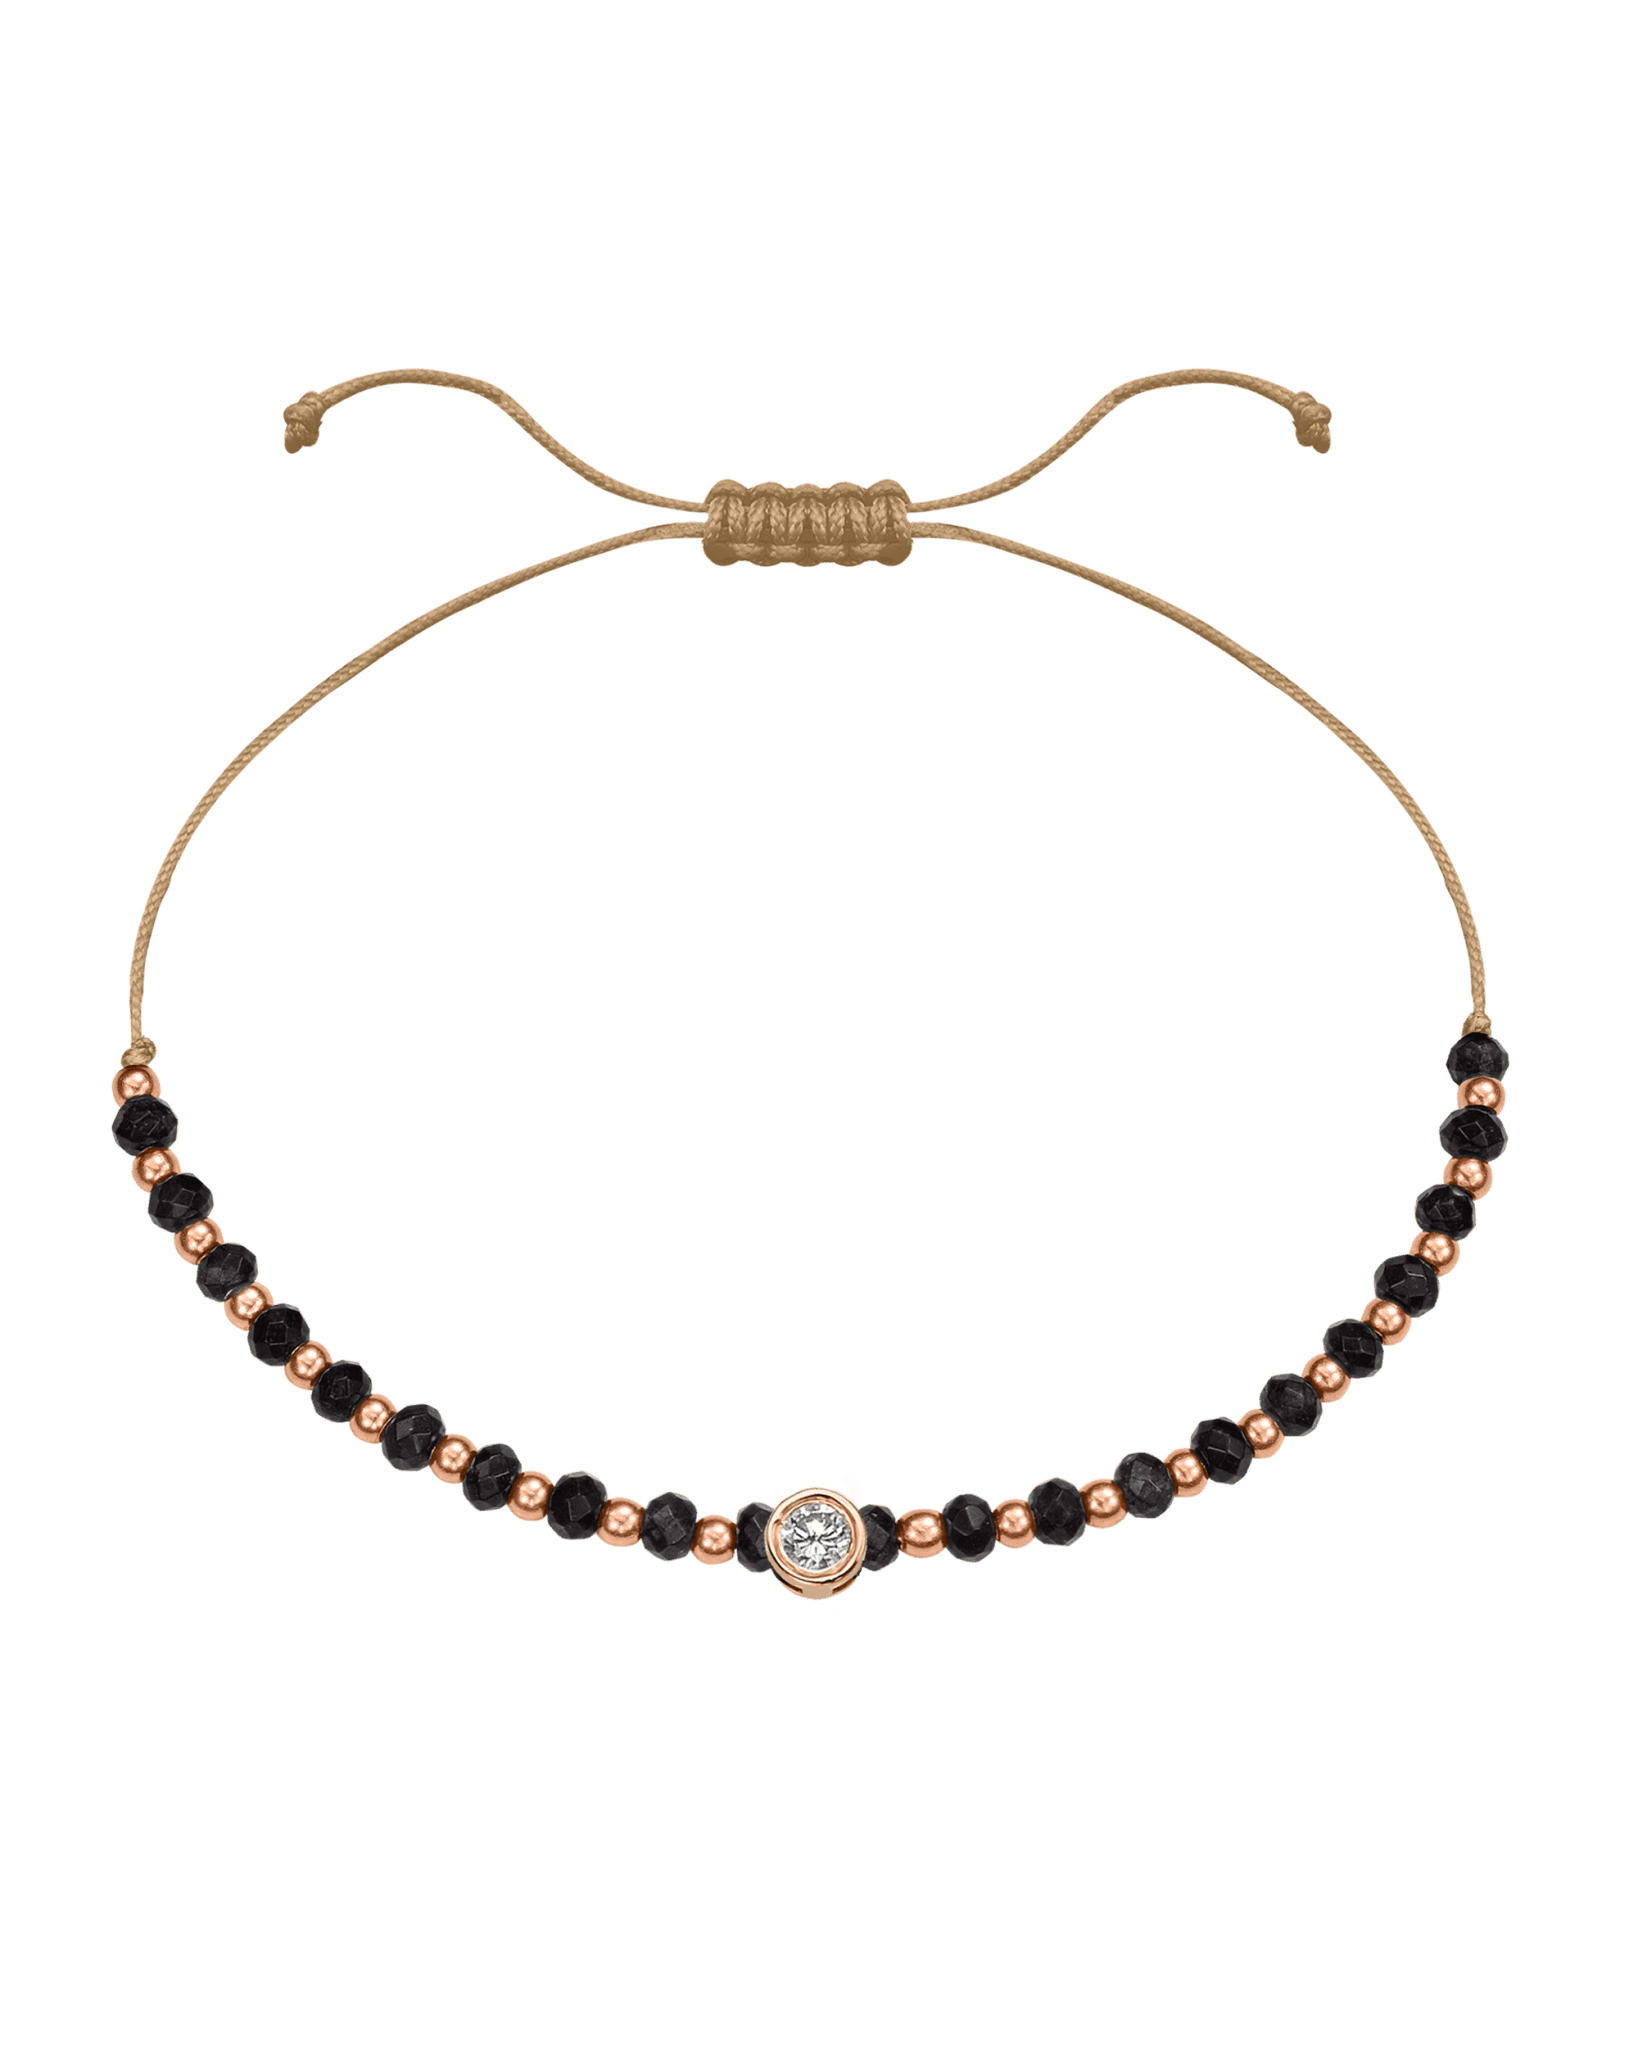 Black Onyx Gemstone String of Love Bracelet for Protection - 14K Rose Gold Bracelets 14K Solid Gold Camel Large: 0.1ct 